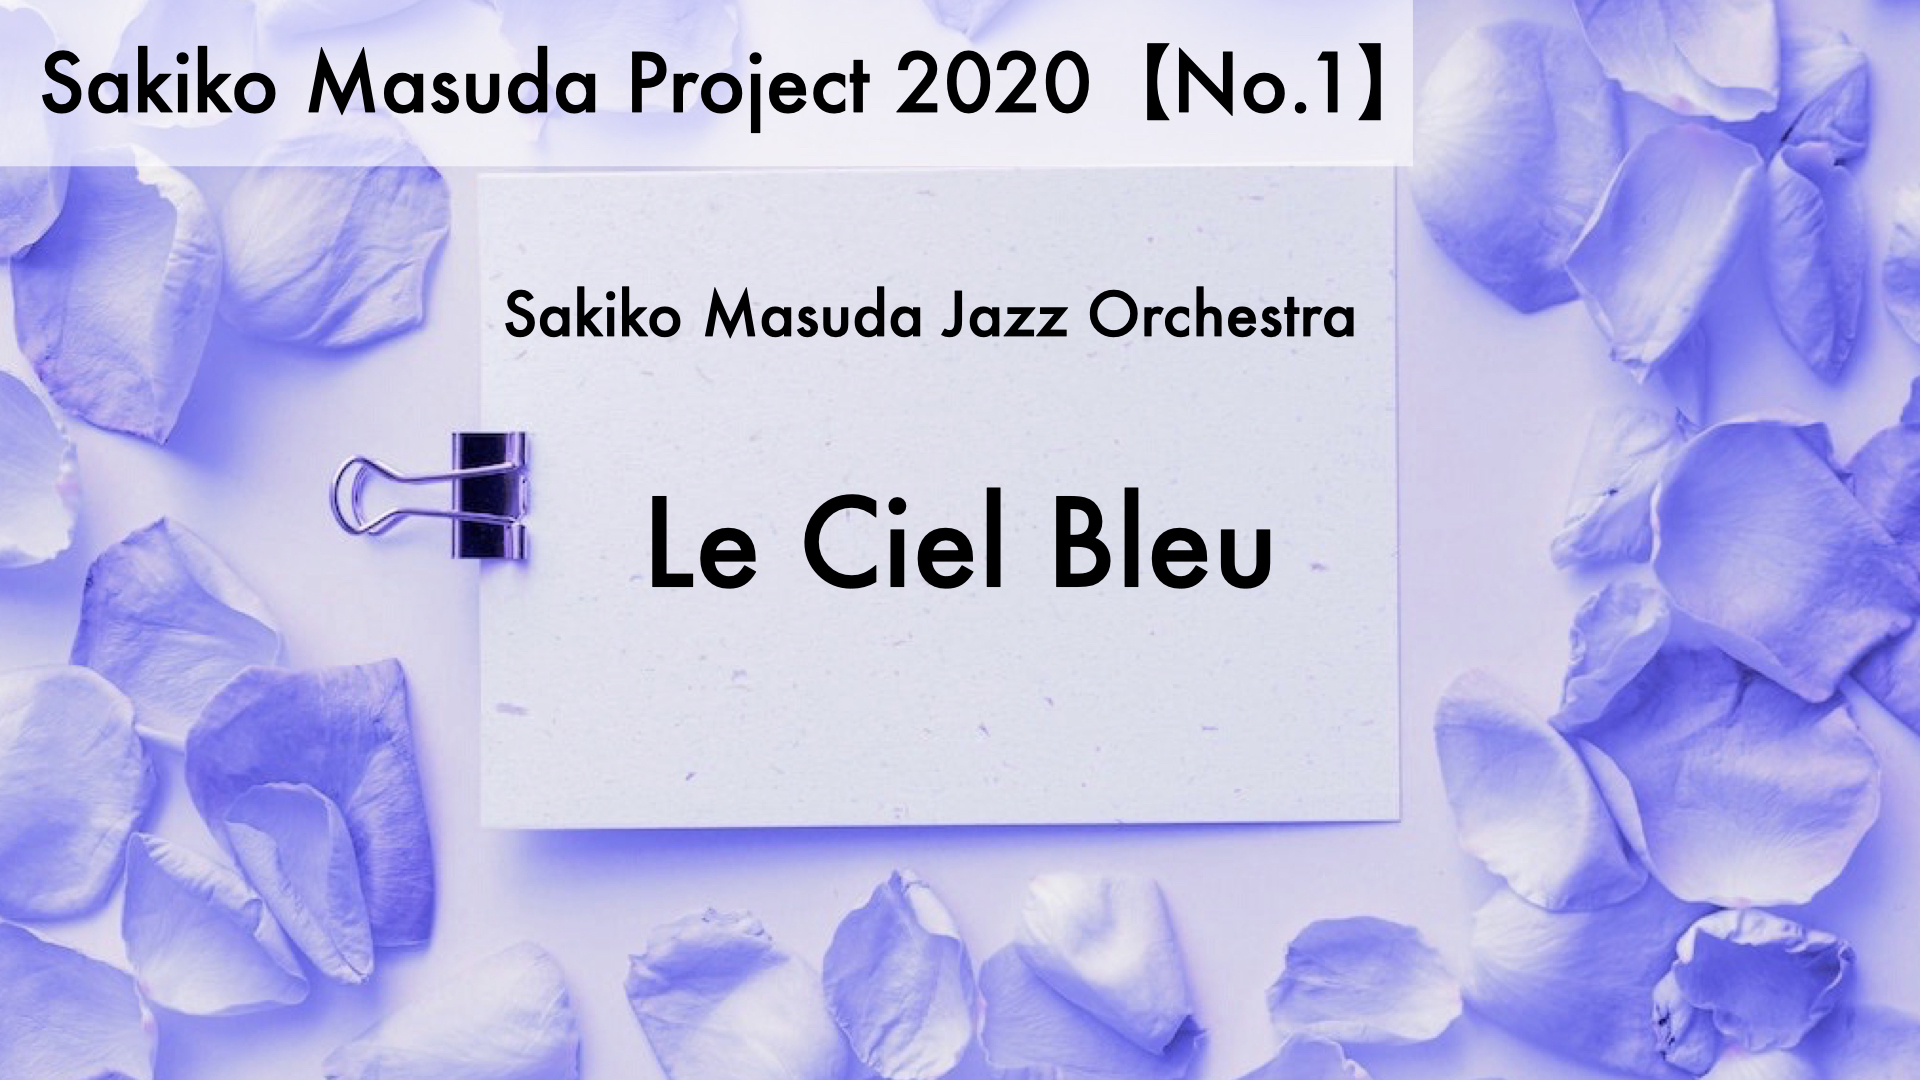 Le Ciel Bleu【No.1 Sakiko Masuda Project 2020】